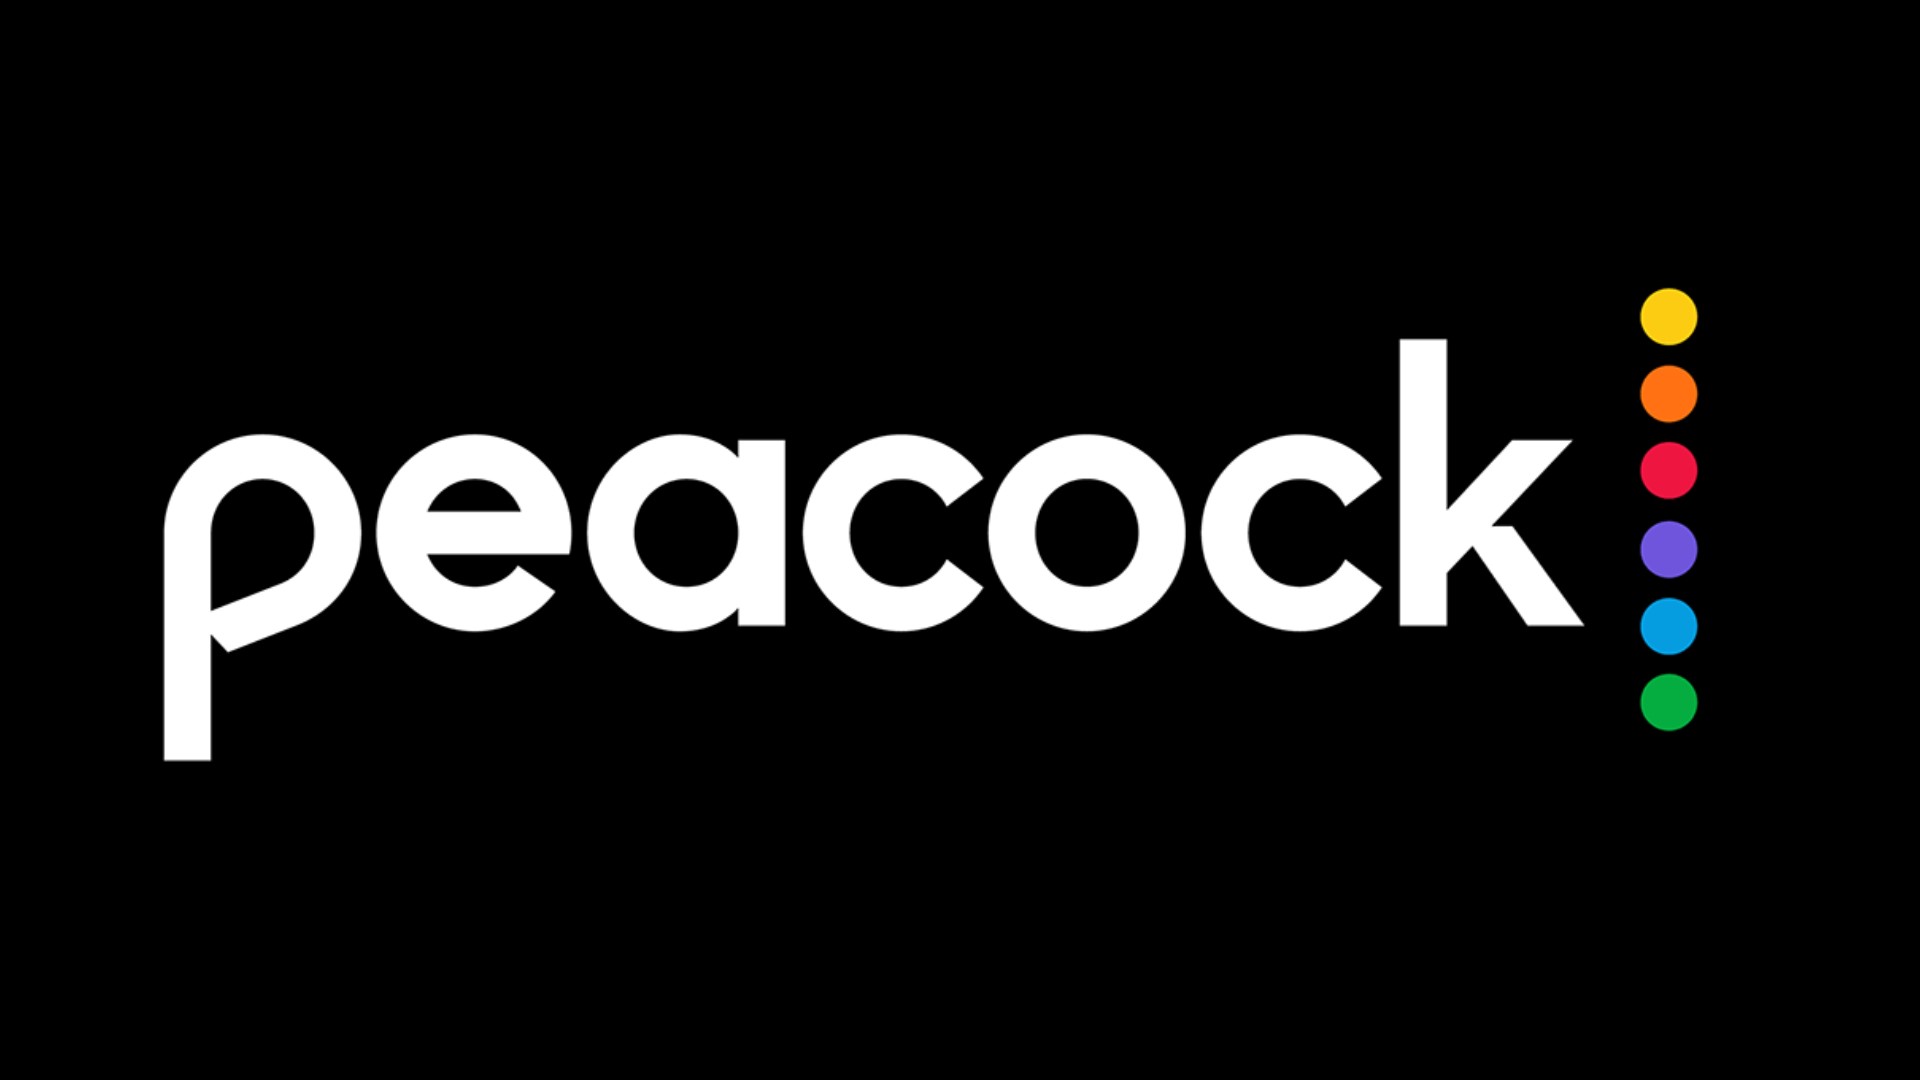 Large peacock logo